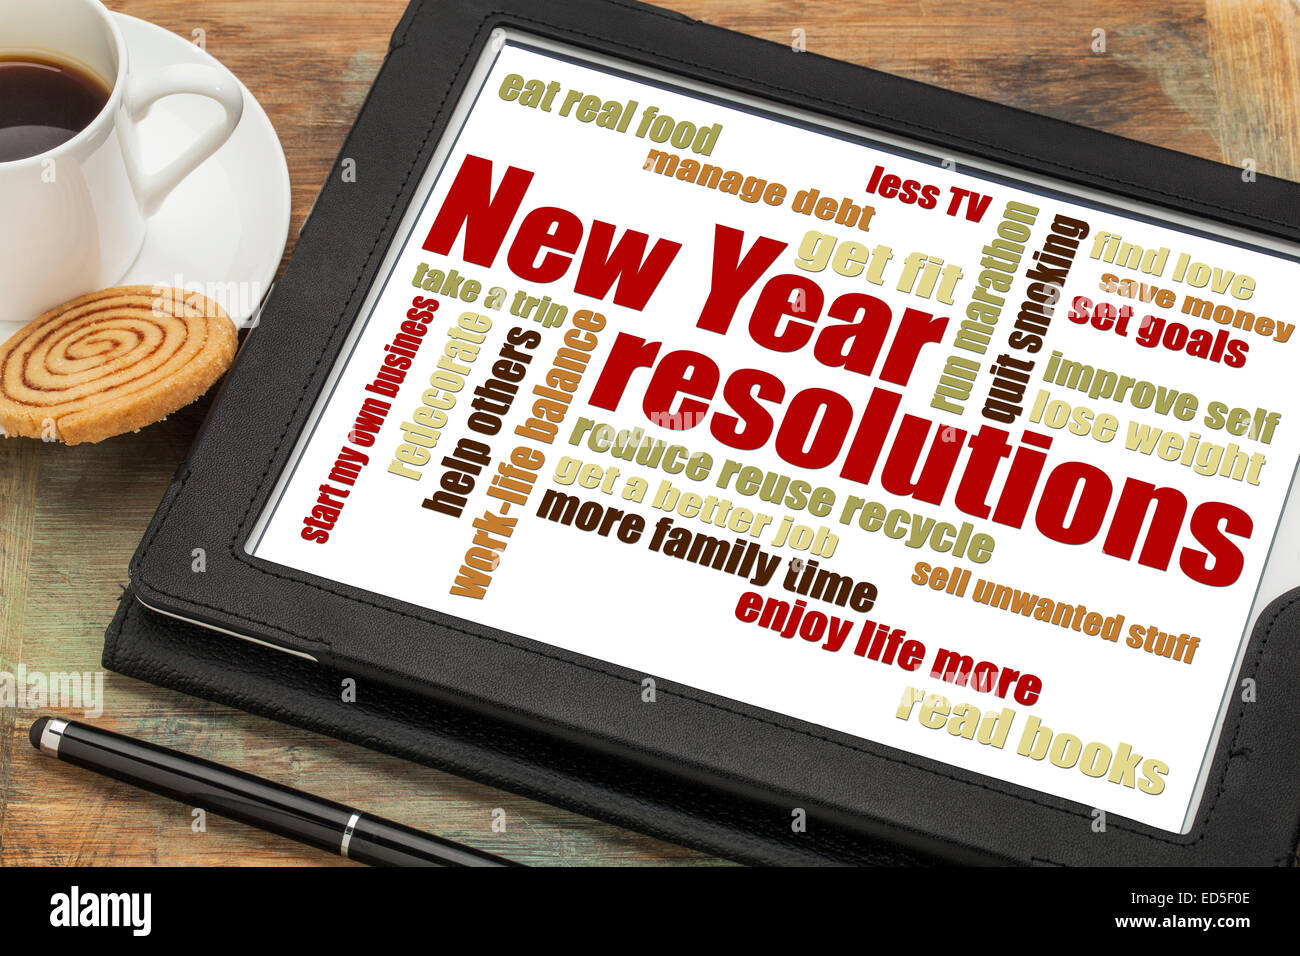 Neujahr-Ziele oder Auflösungen - eine Wortwolke auf digitale Tablett mit Kaffee Stockfoto